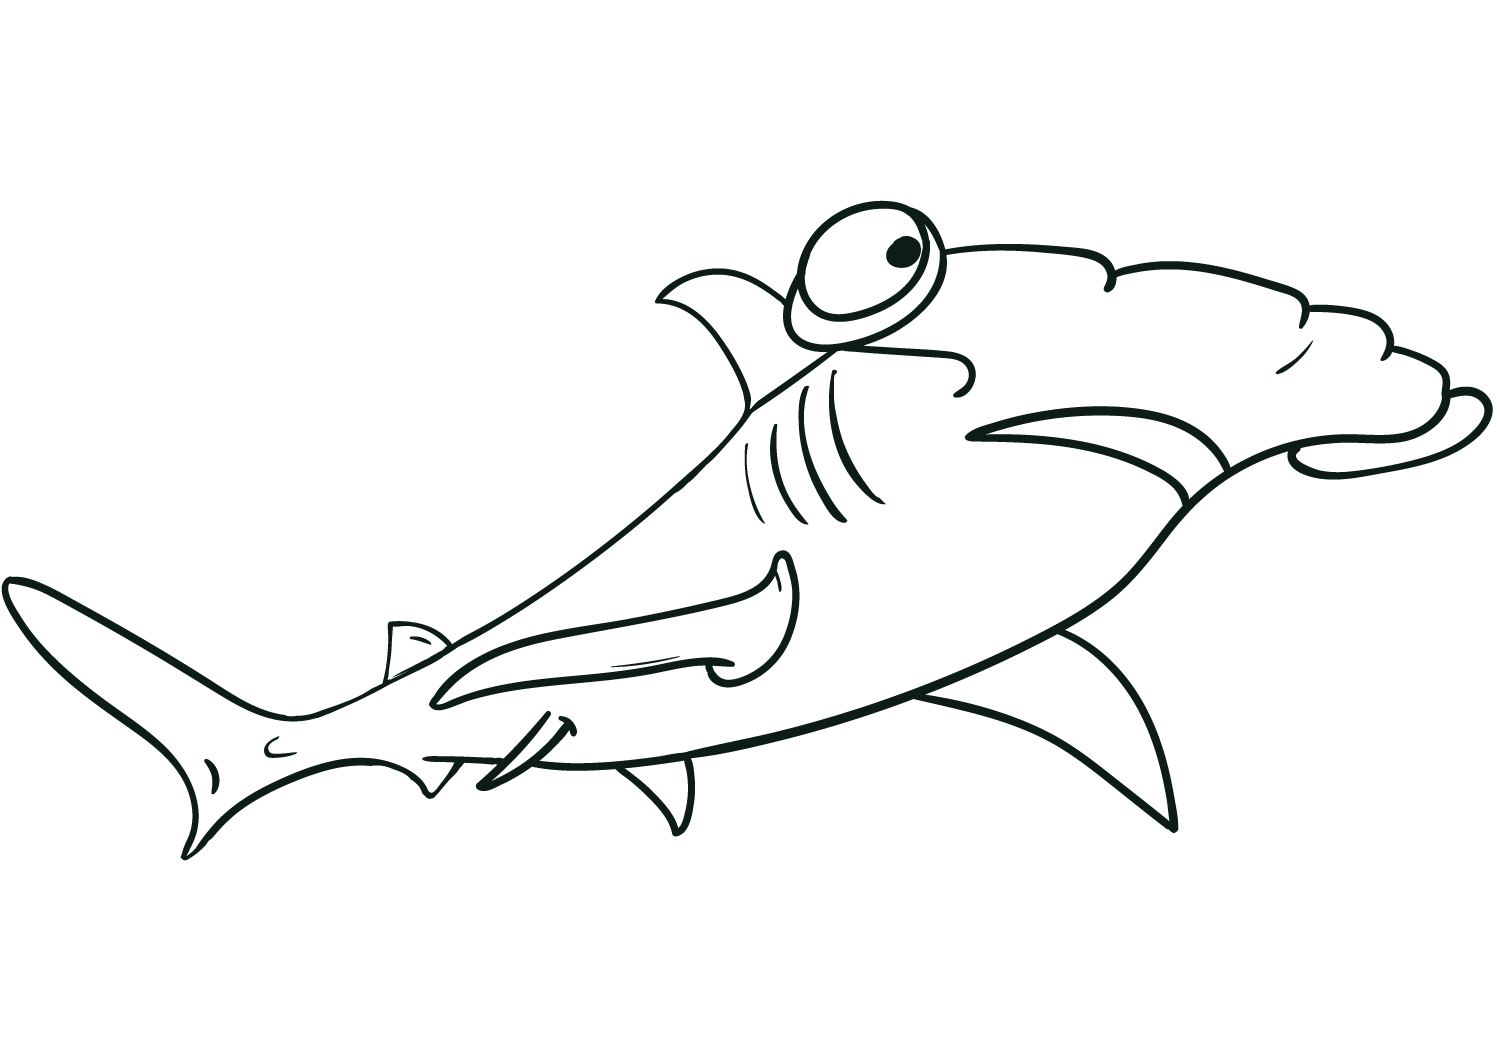 El tonto tiburón martillo tiene grandes ojos redondos de Shark